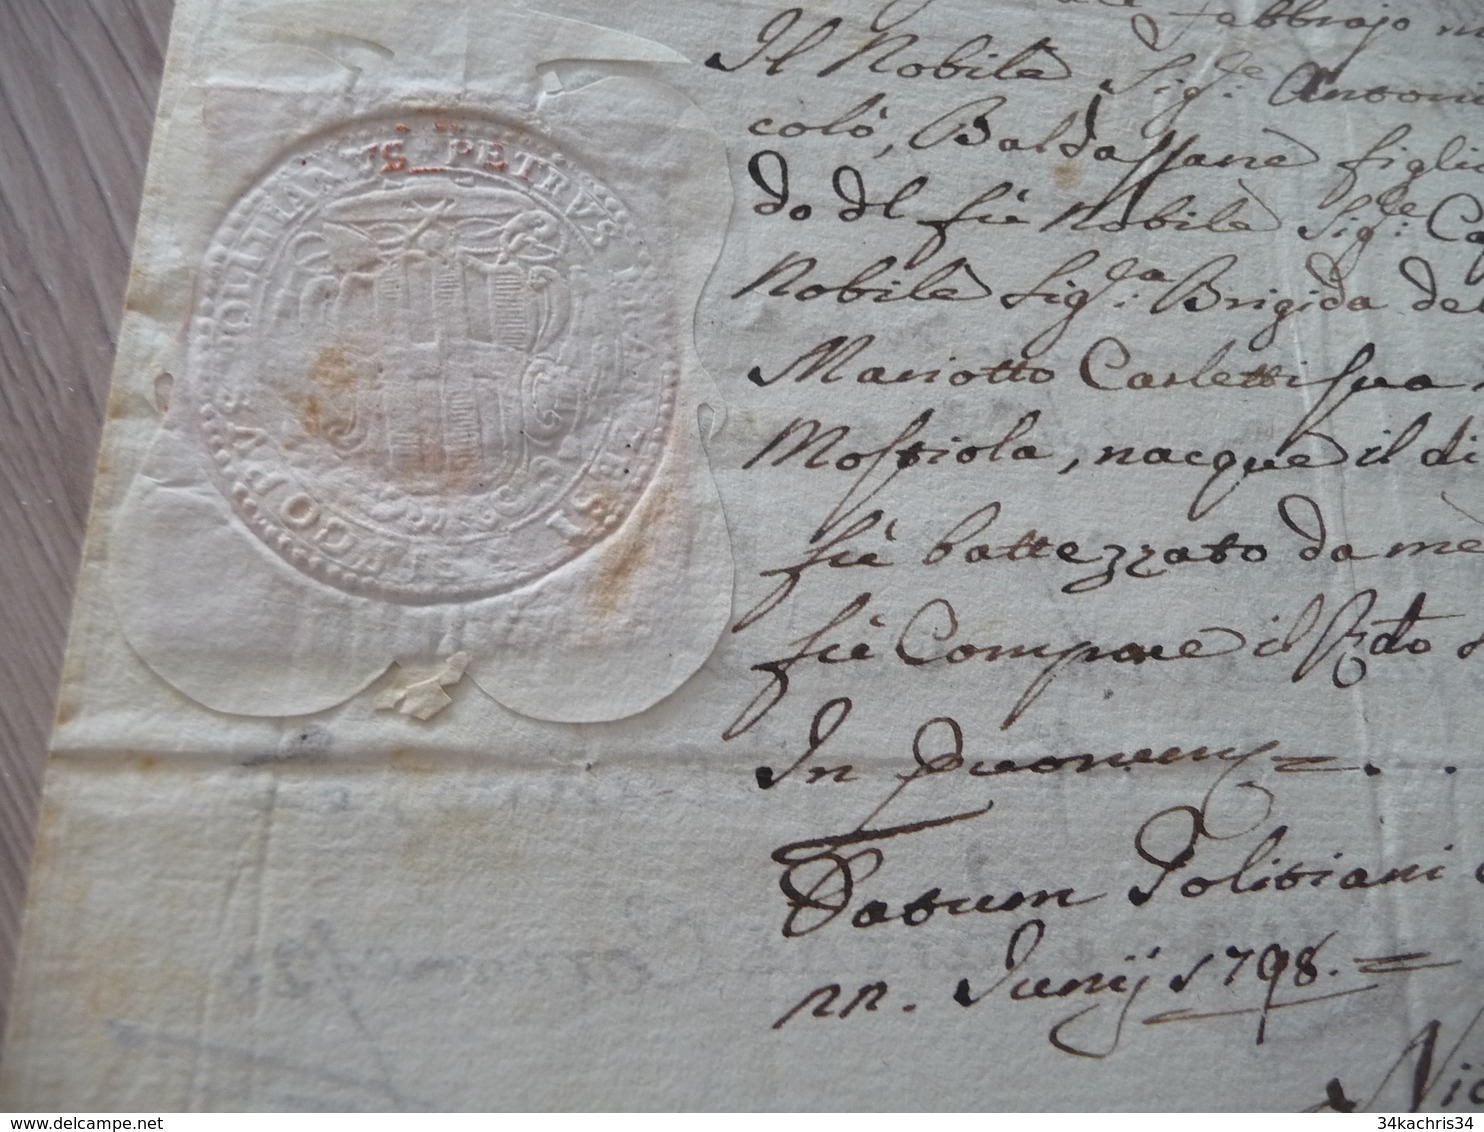 2 pièces Signées autographe Reinhard Charles Ministre en Toscane révolution An V cachets sceaux Certifications  Italie